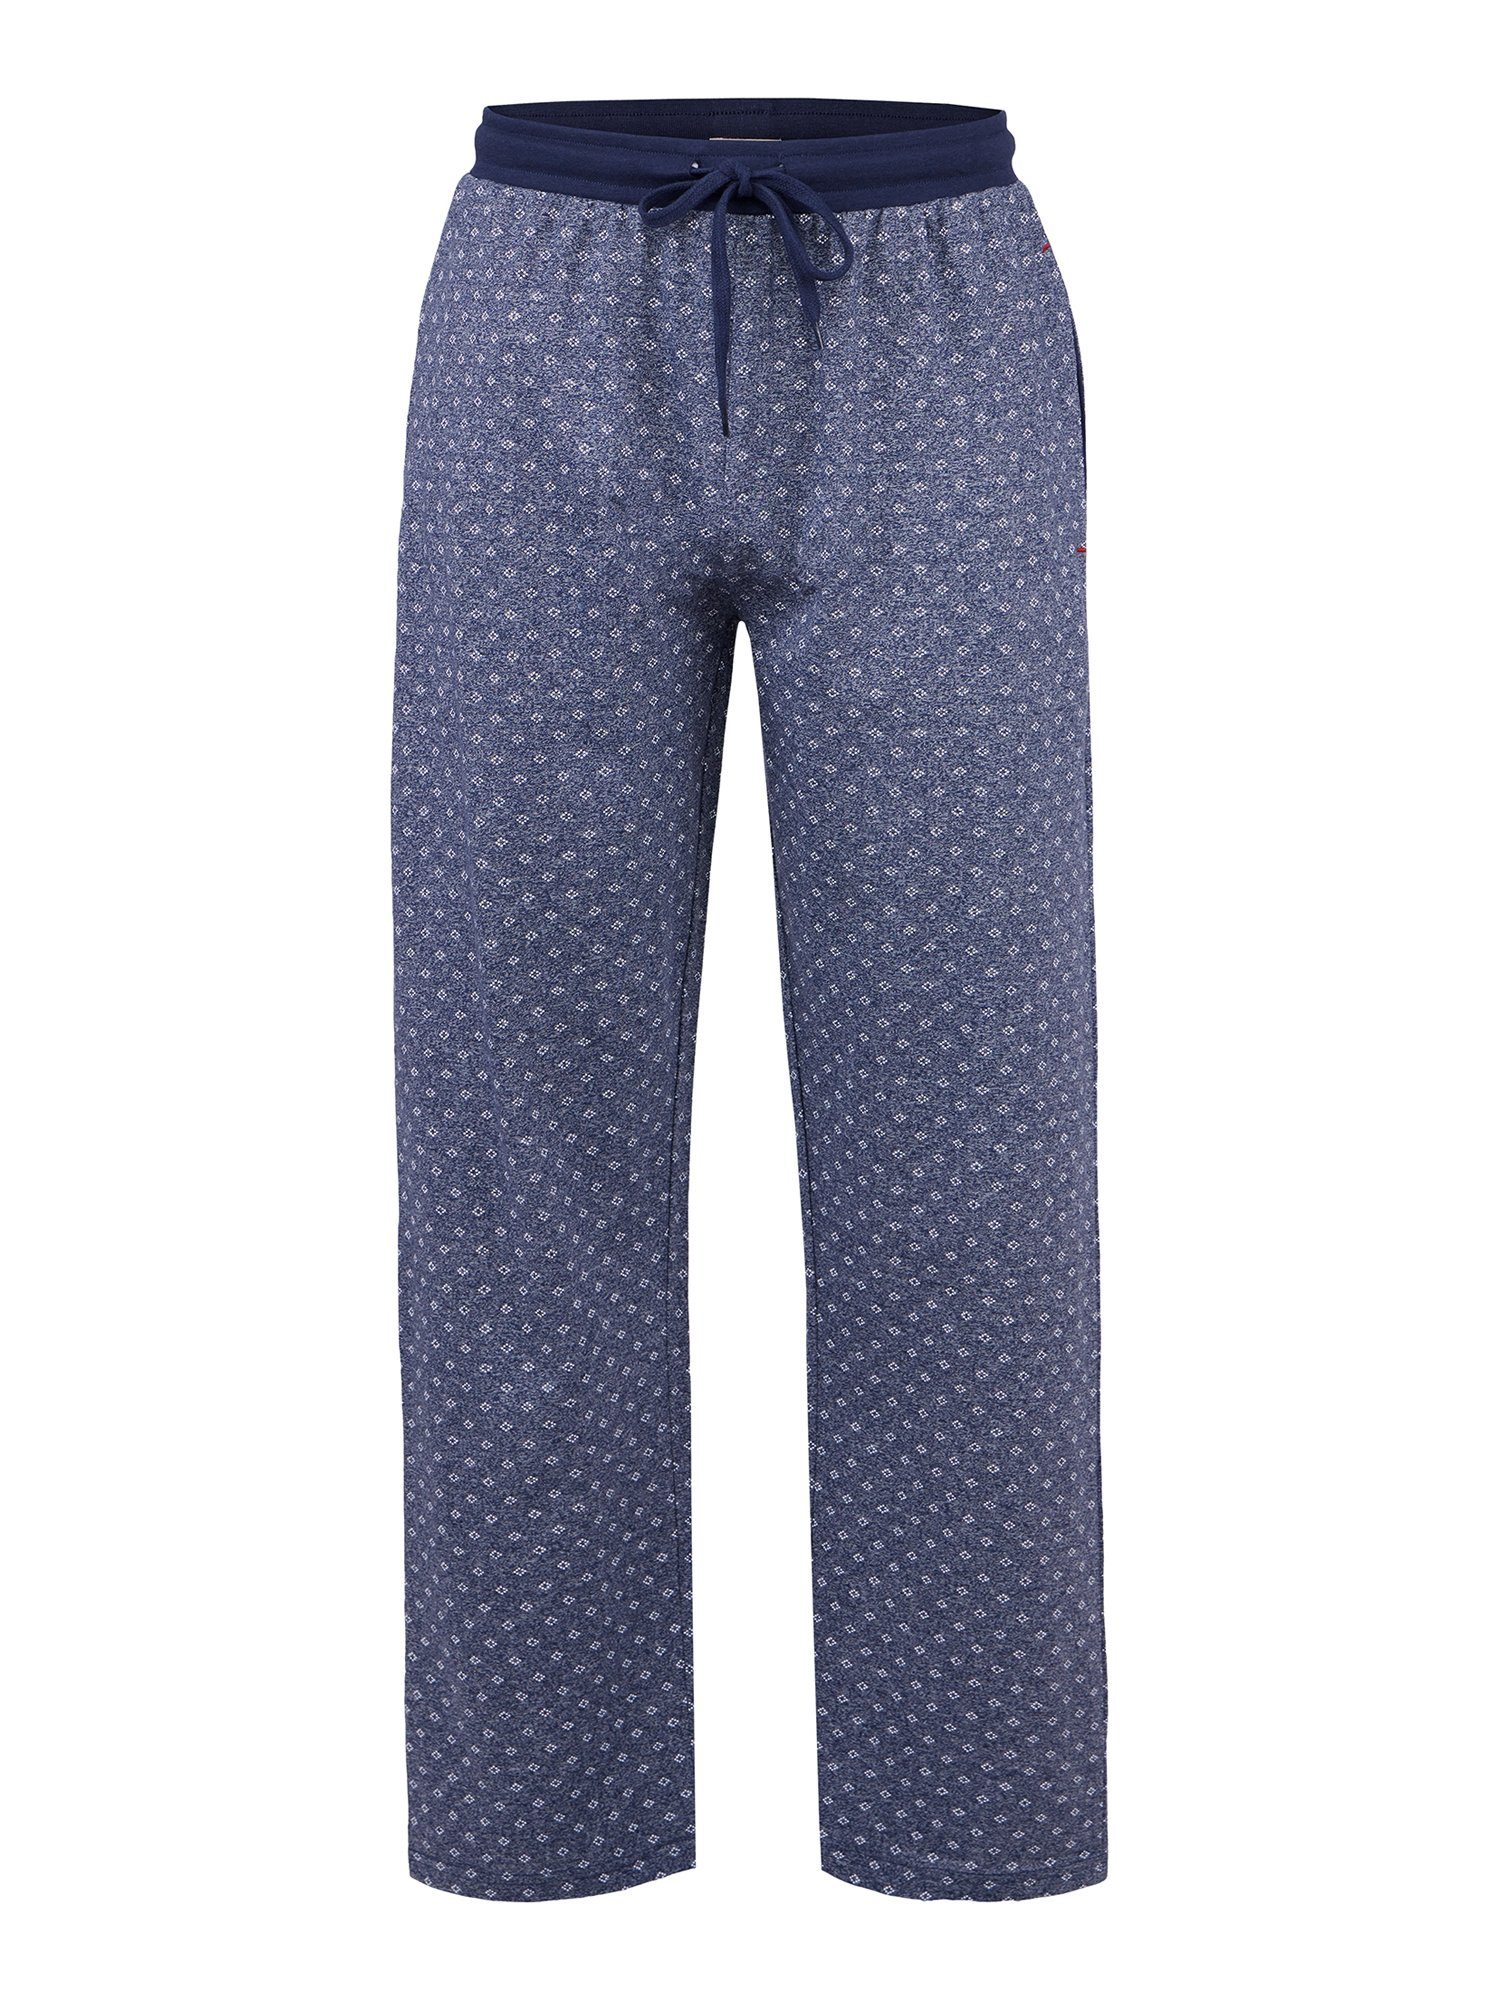 & Co. Langarm bequem Phil tlg) (1 Schlafanzug Pyjama blau-grau Special